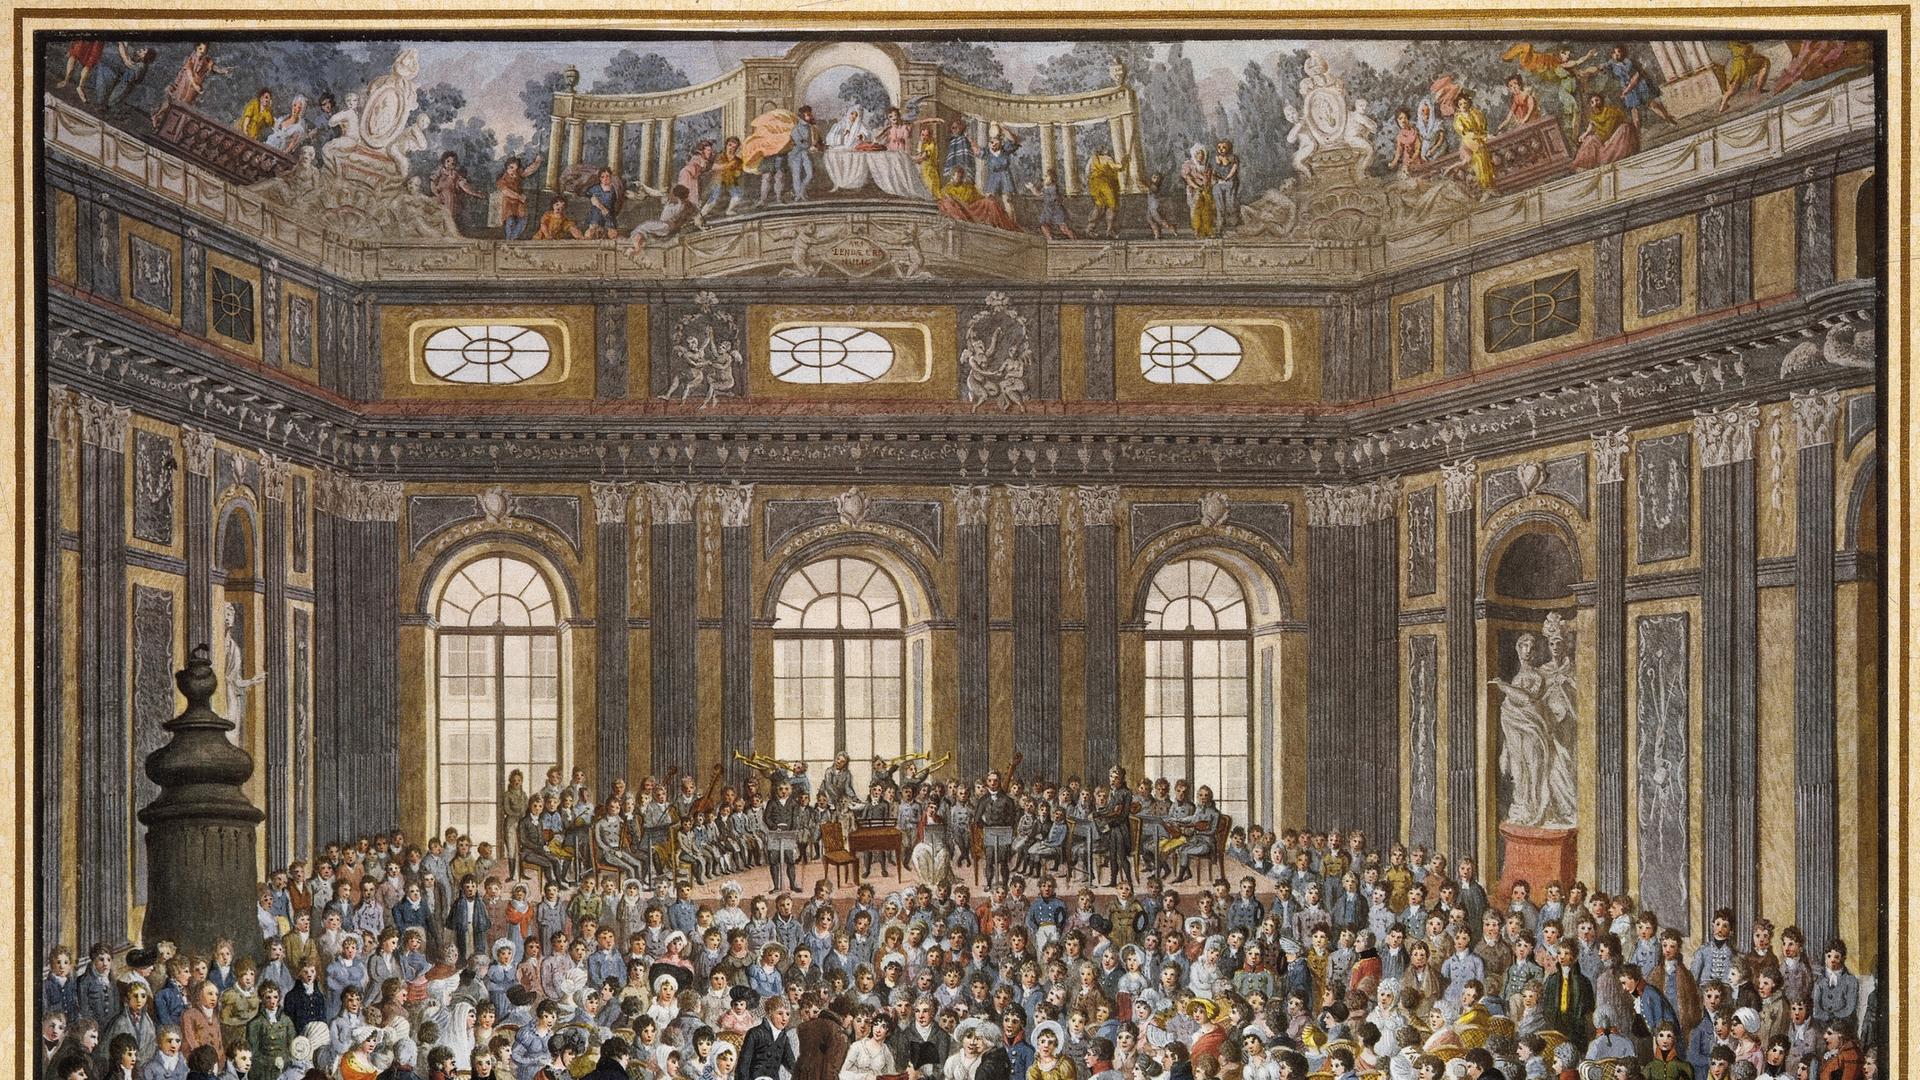 Aufführung von Joseph Haydns Oratorium "Die Schöpfung" 1808 im Festsaal der alten Universität Wien. Noch im selben Jahr dargestellt von Balthasar Wigand in diesem Aquarell. 